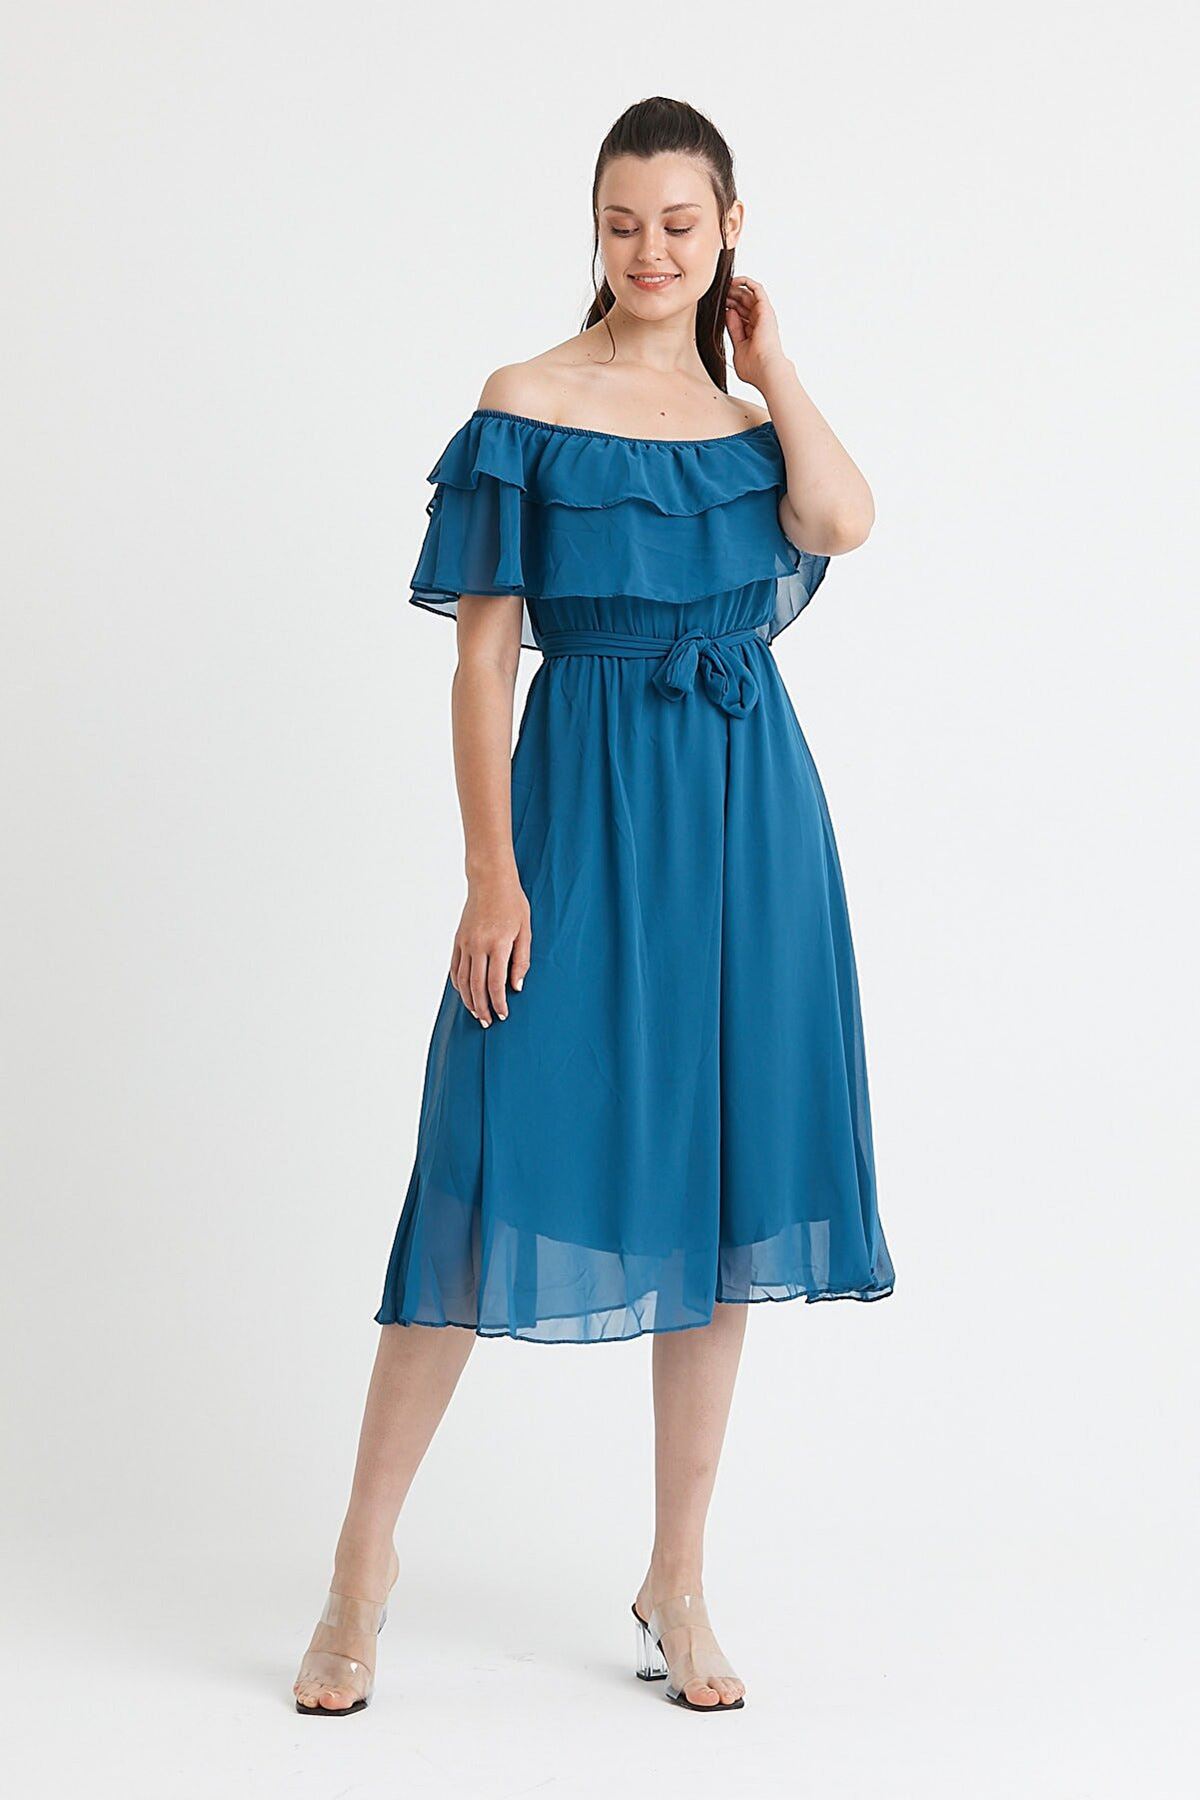  Kadın Carmen Yaka Şifon Petrol Mavisi Elbise 2D-5013